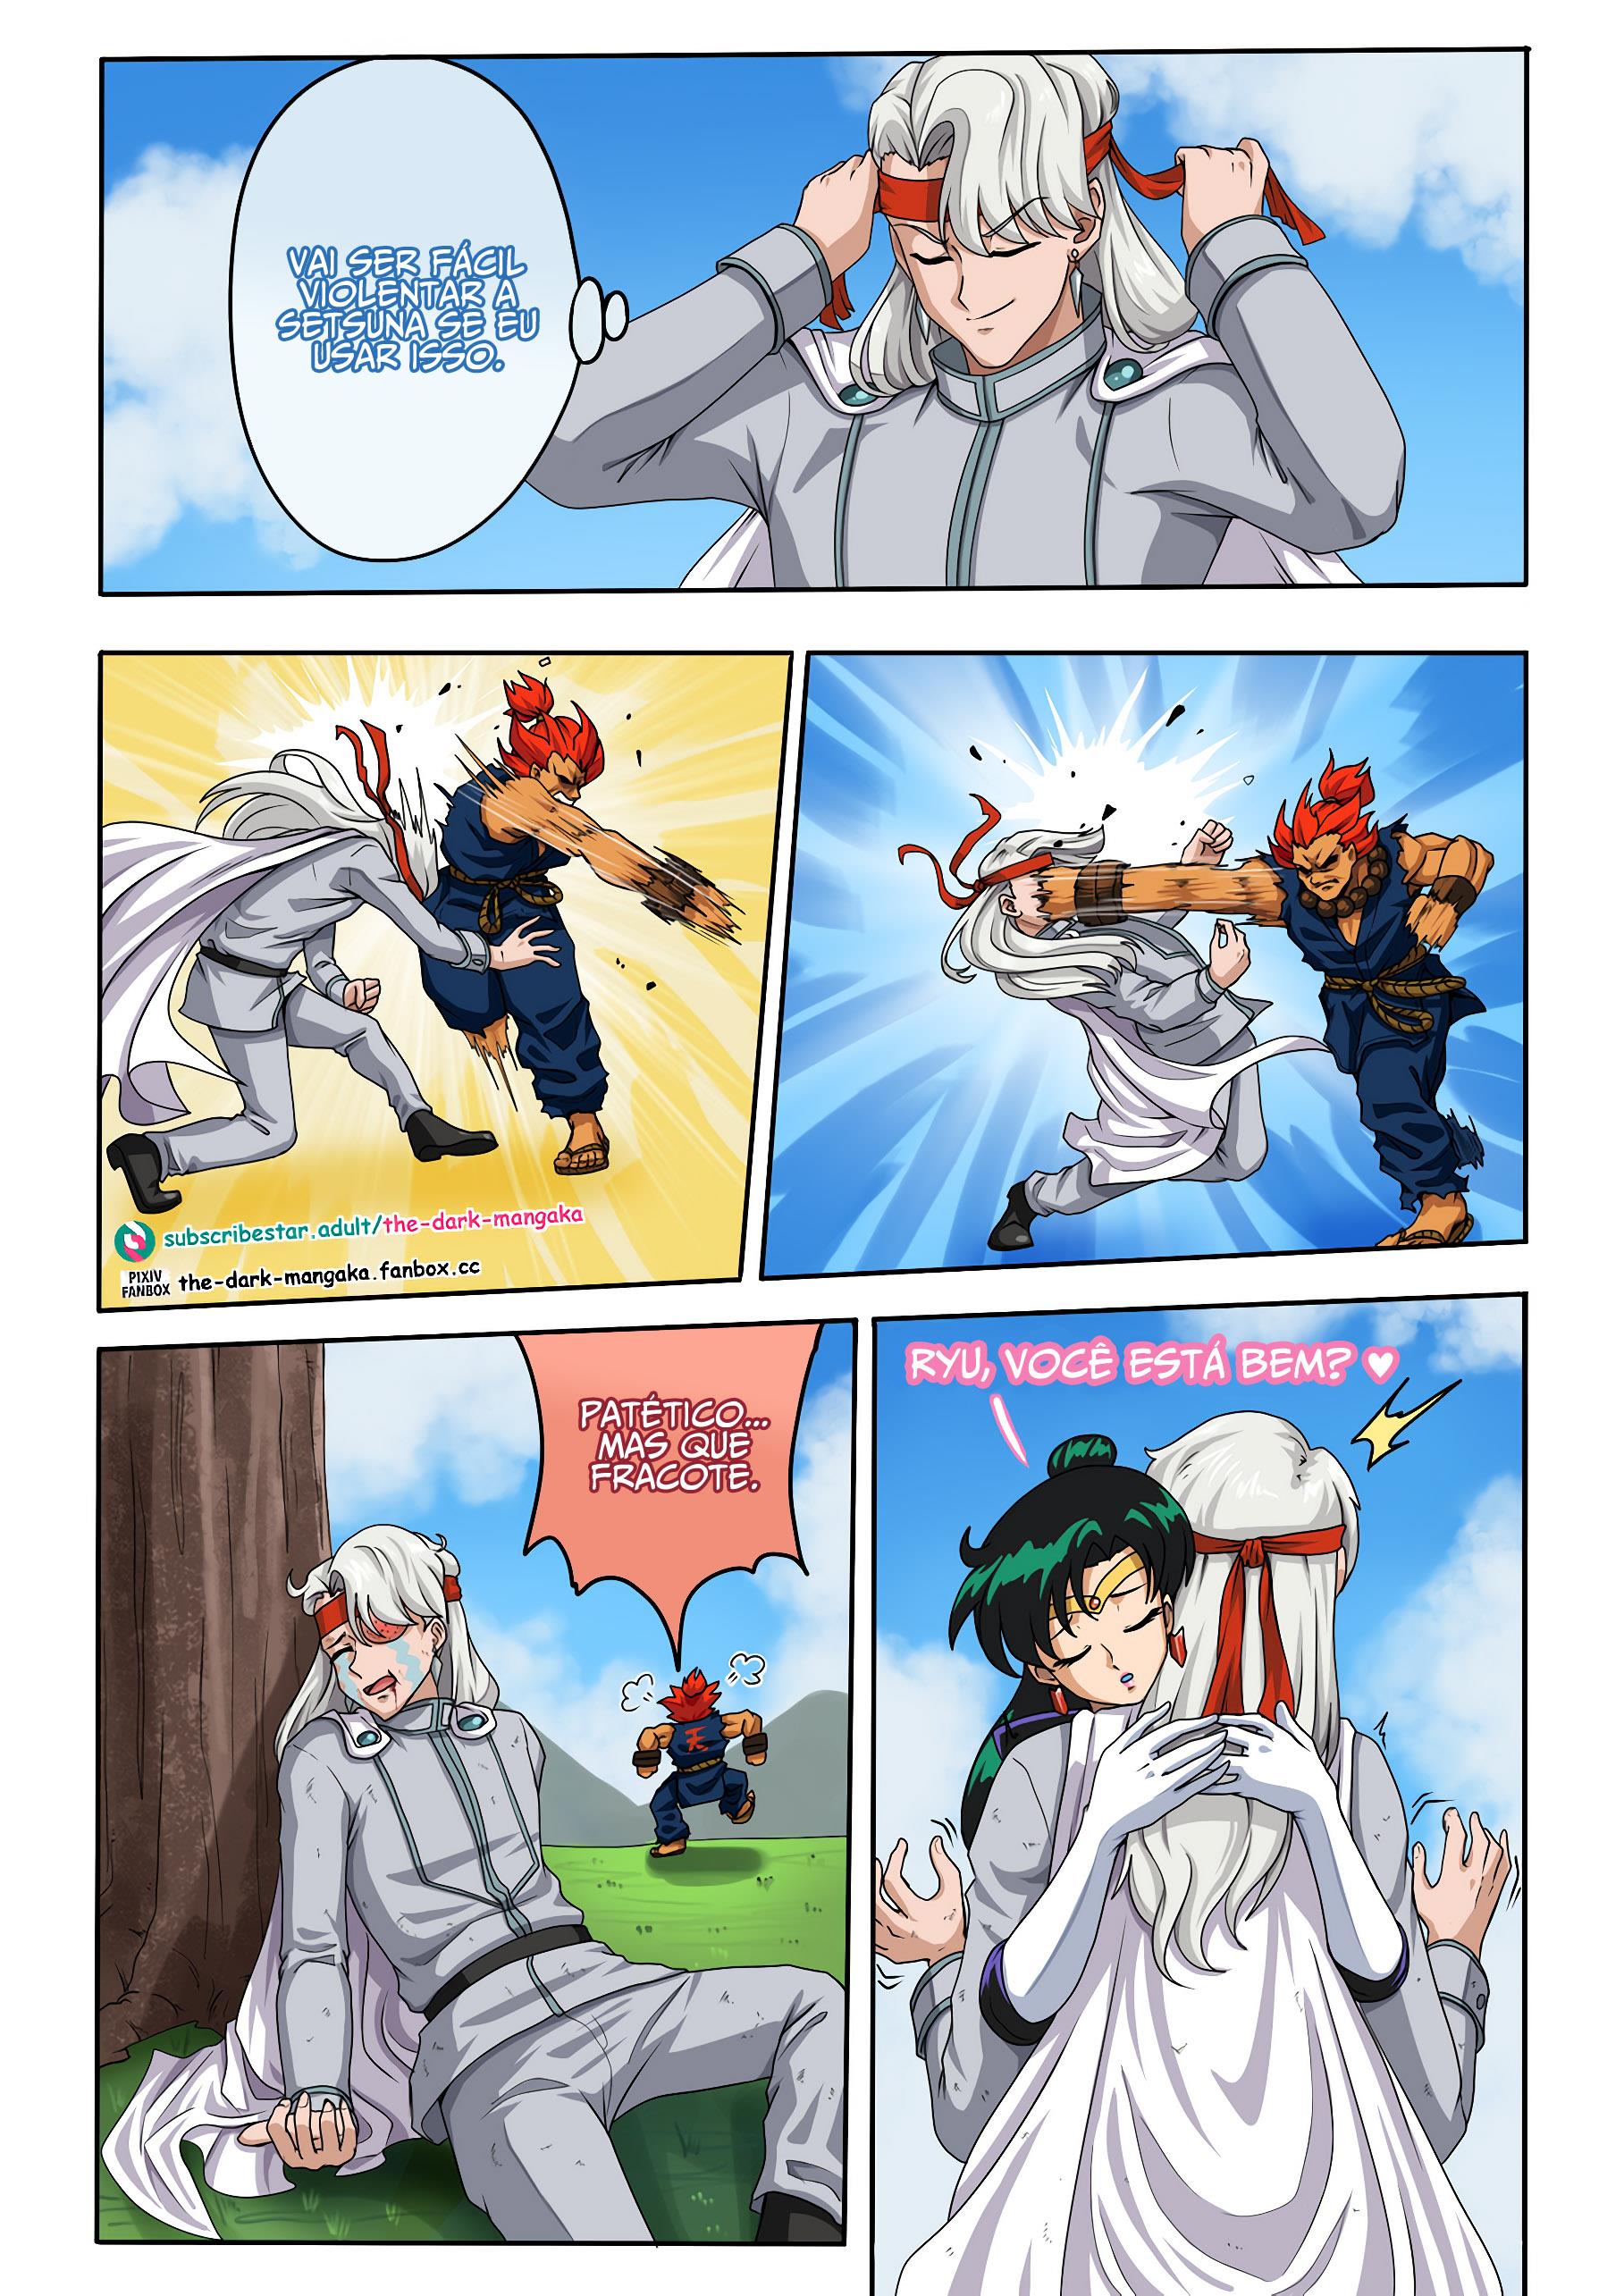 O poder sexual de Ryu - Foto 6